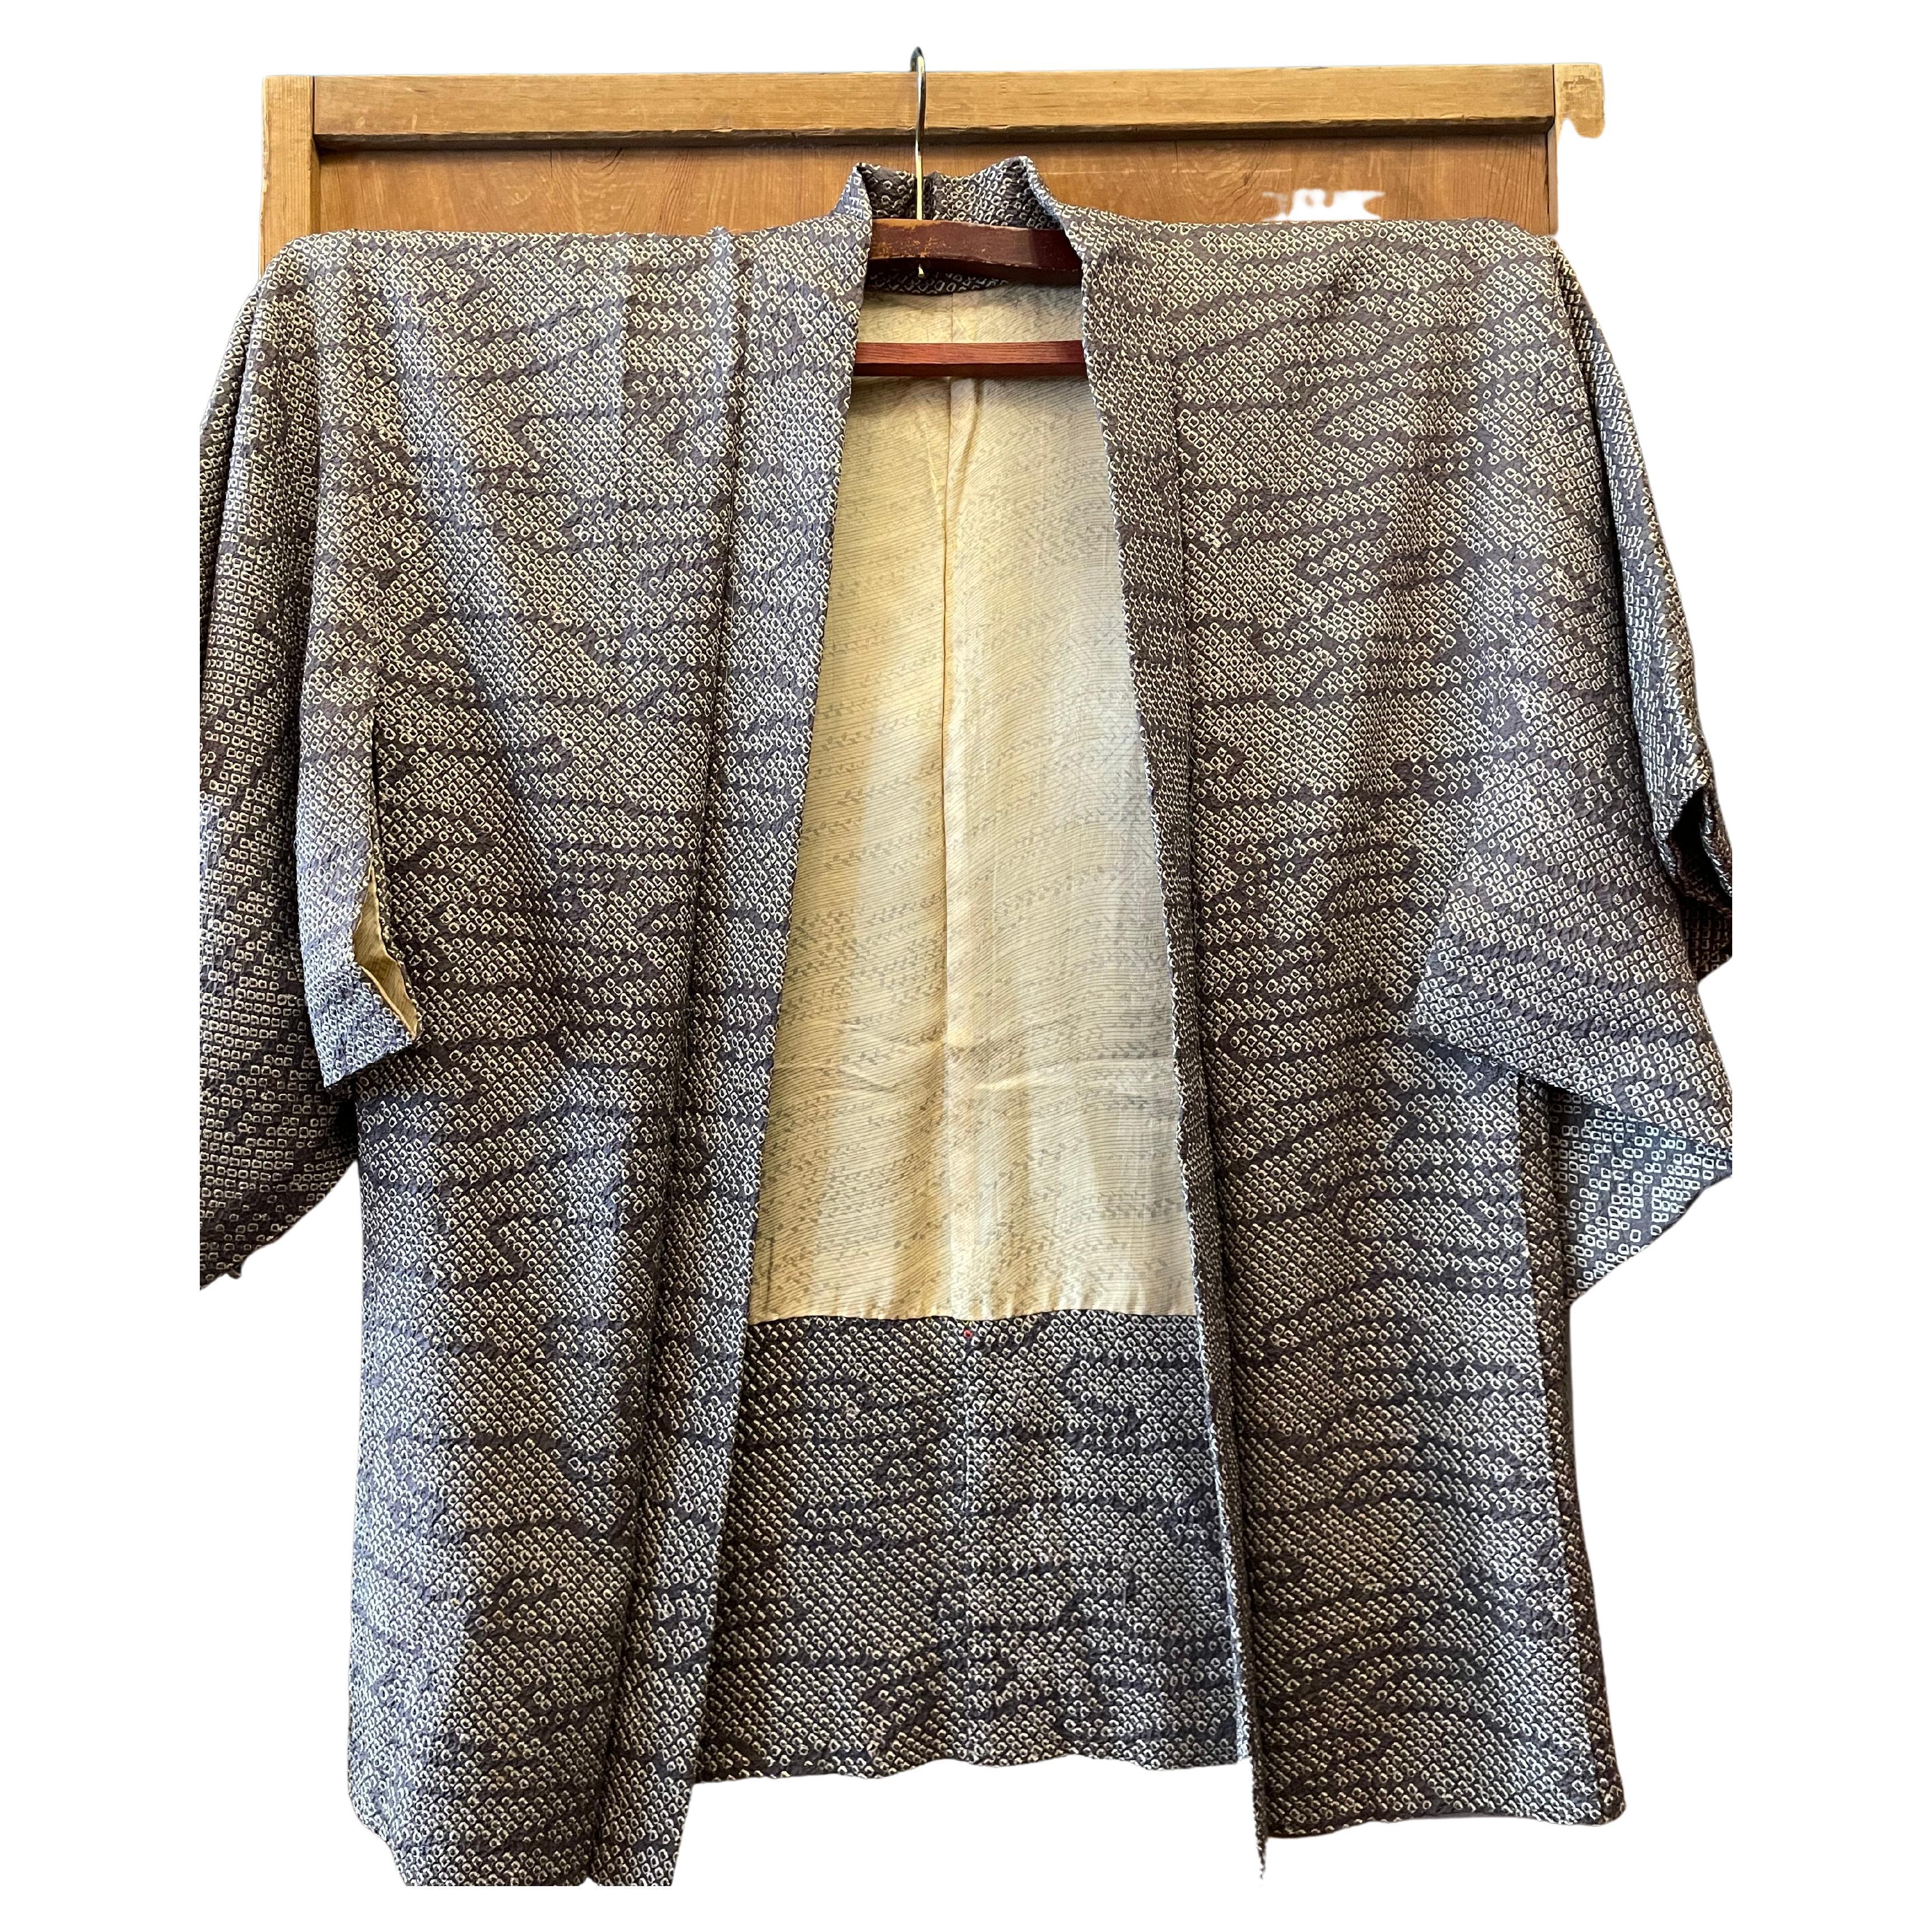 Veste Haori japonaise en soie grise Technique Shibori des années 1970 Showa